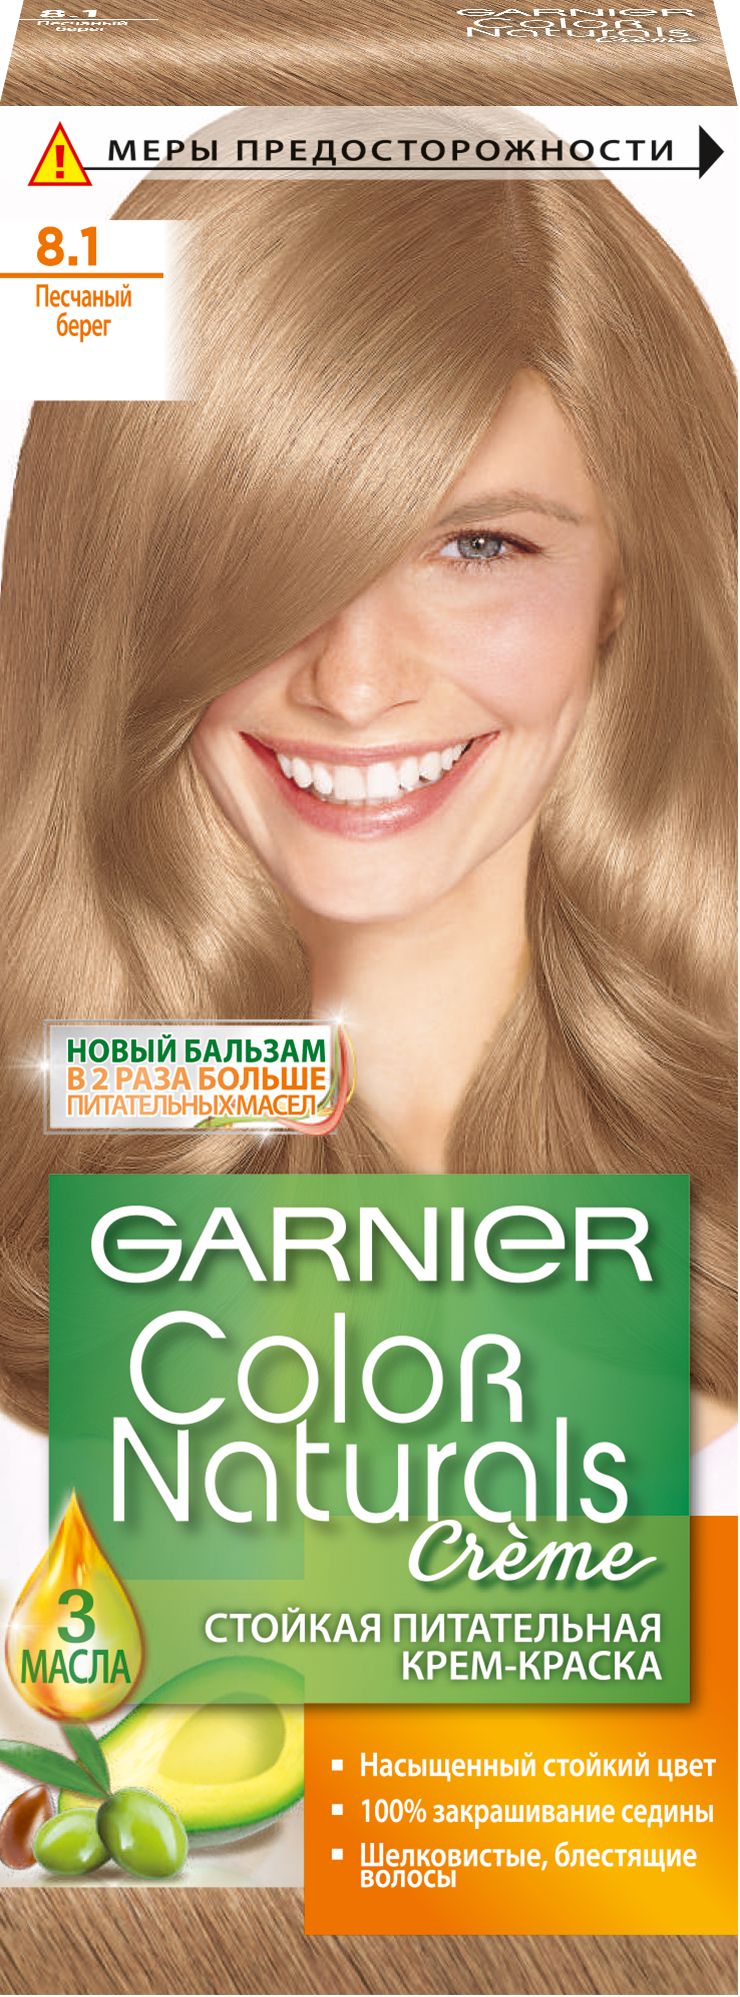 Garnier color краска для волос отзывы. Краска для волос "гарньер" Color naturals песчаный берег № 8.1. Краска для волос гарньер песчаный берег 8.1. Гарньер колор натуралс 8.1 песчаный берег. Краска для волос гарньер 8.1.